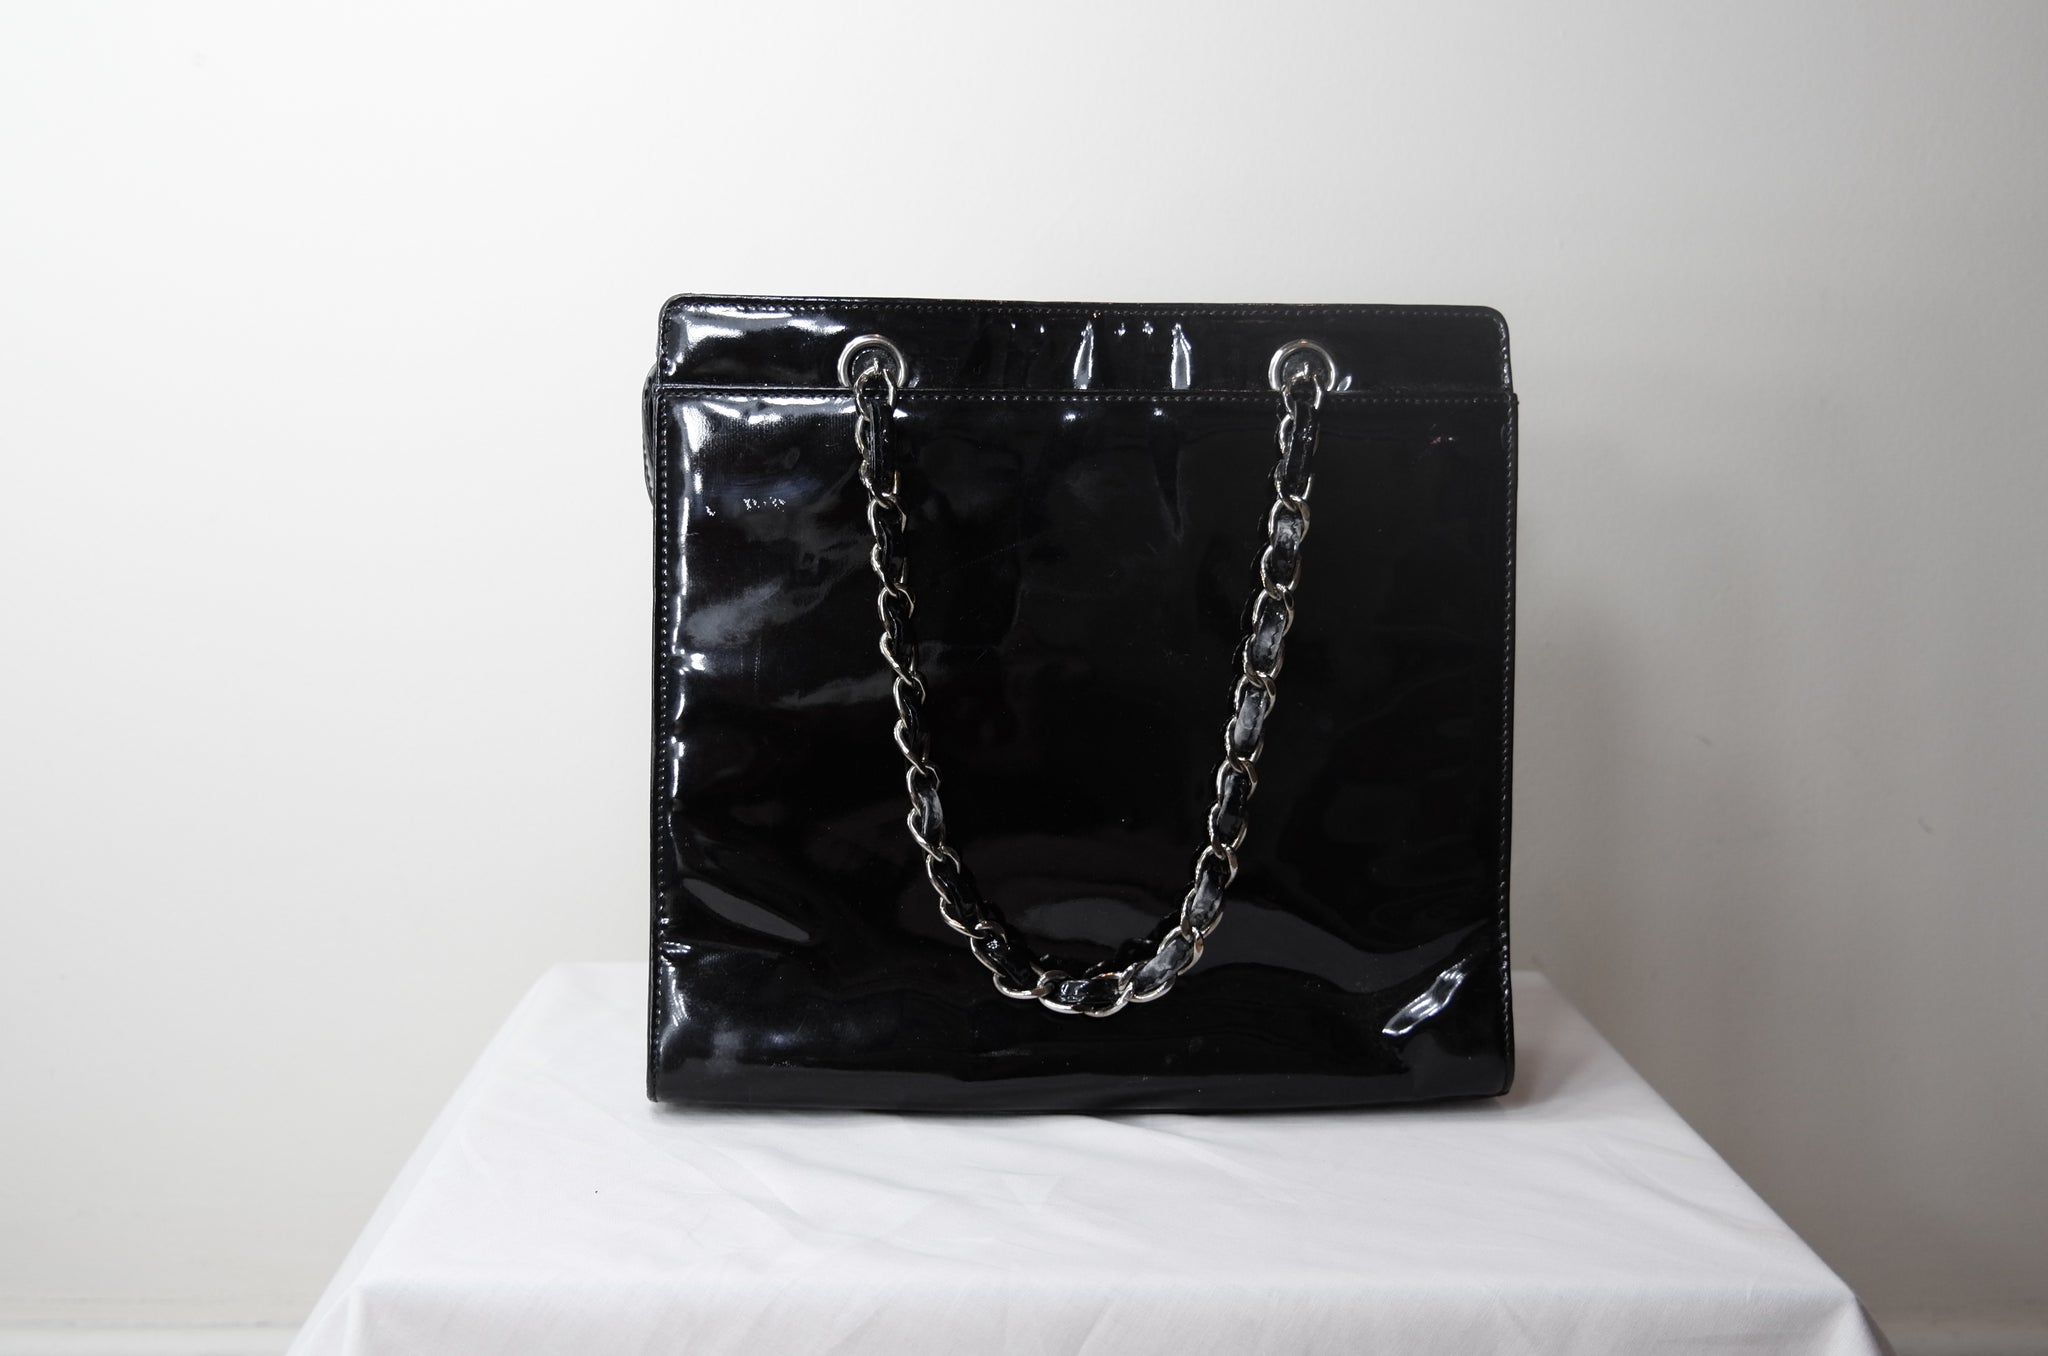 black and white chanel purse box